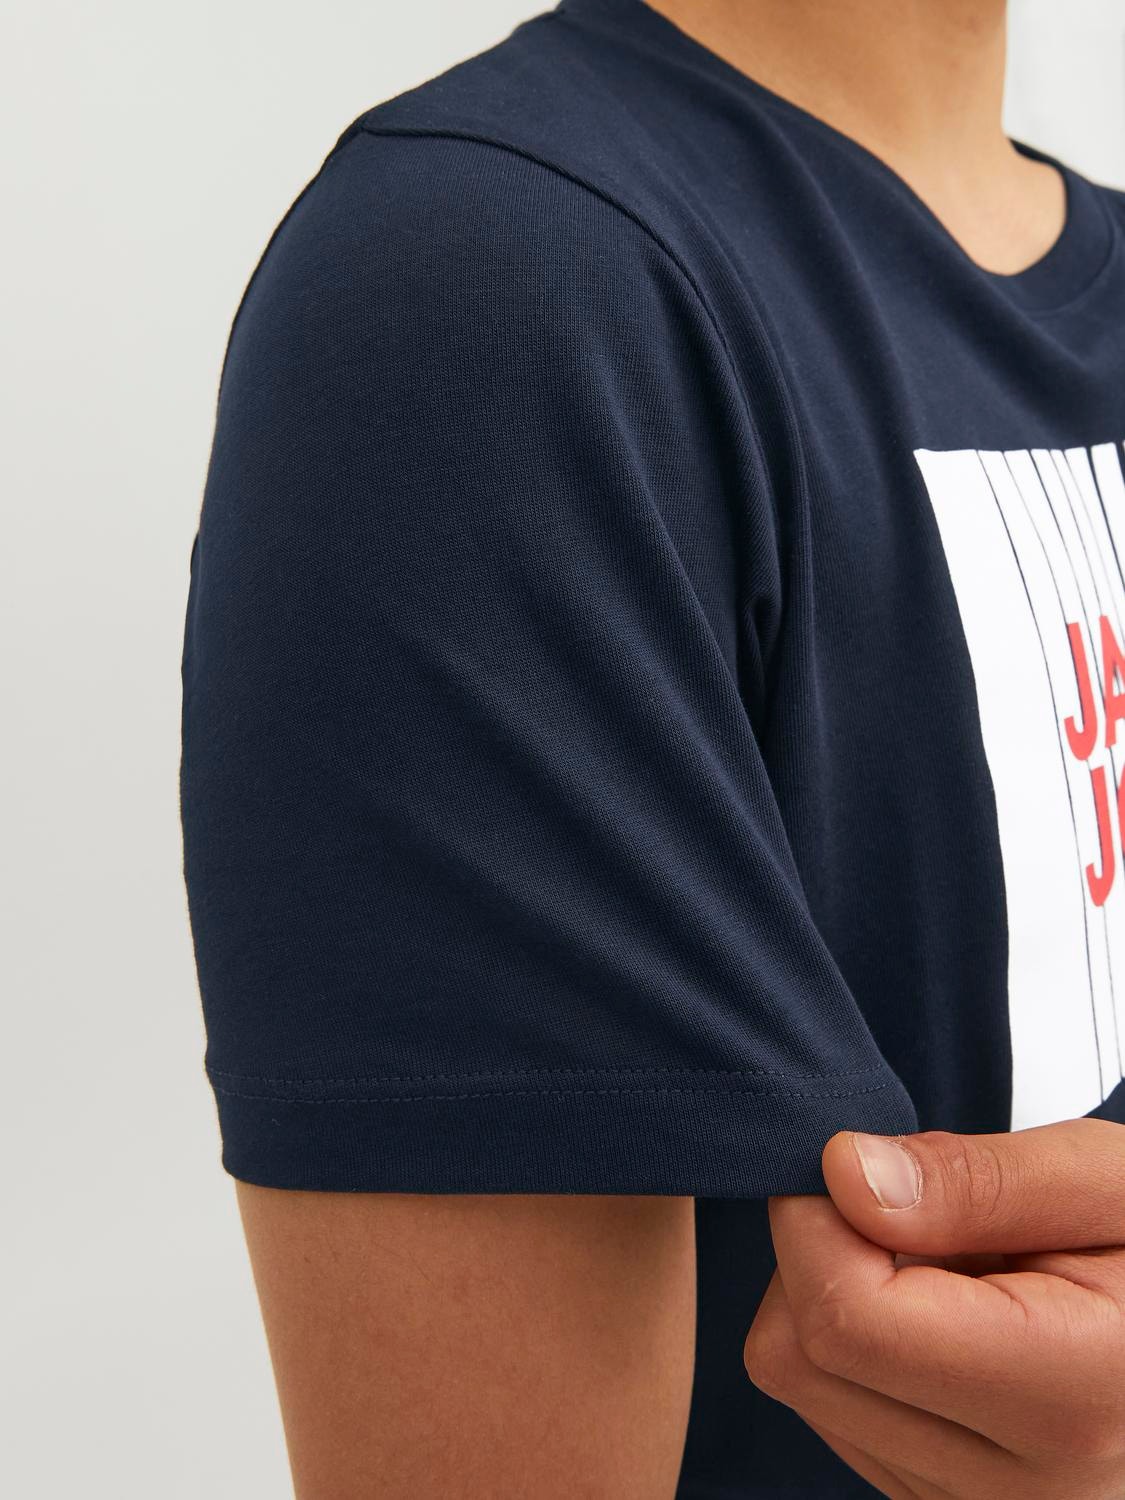 Jack & Jones T-shirt Logo Para meninos -Navy Blazer - 12237411